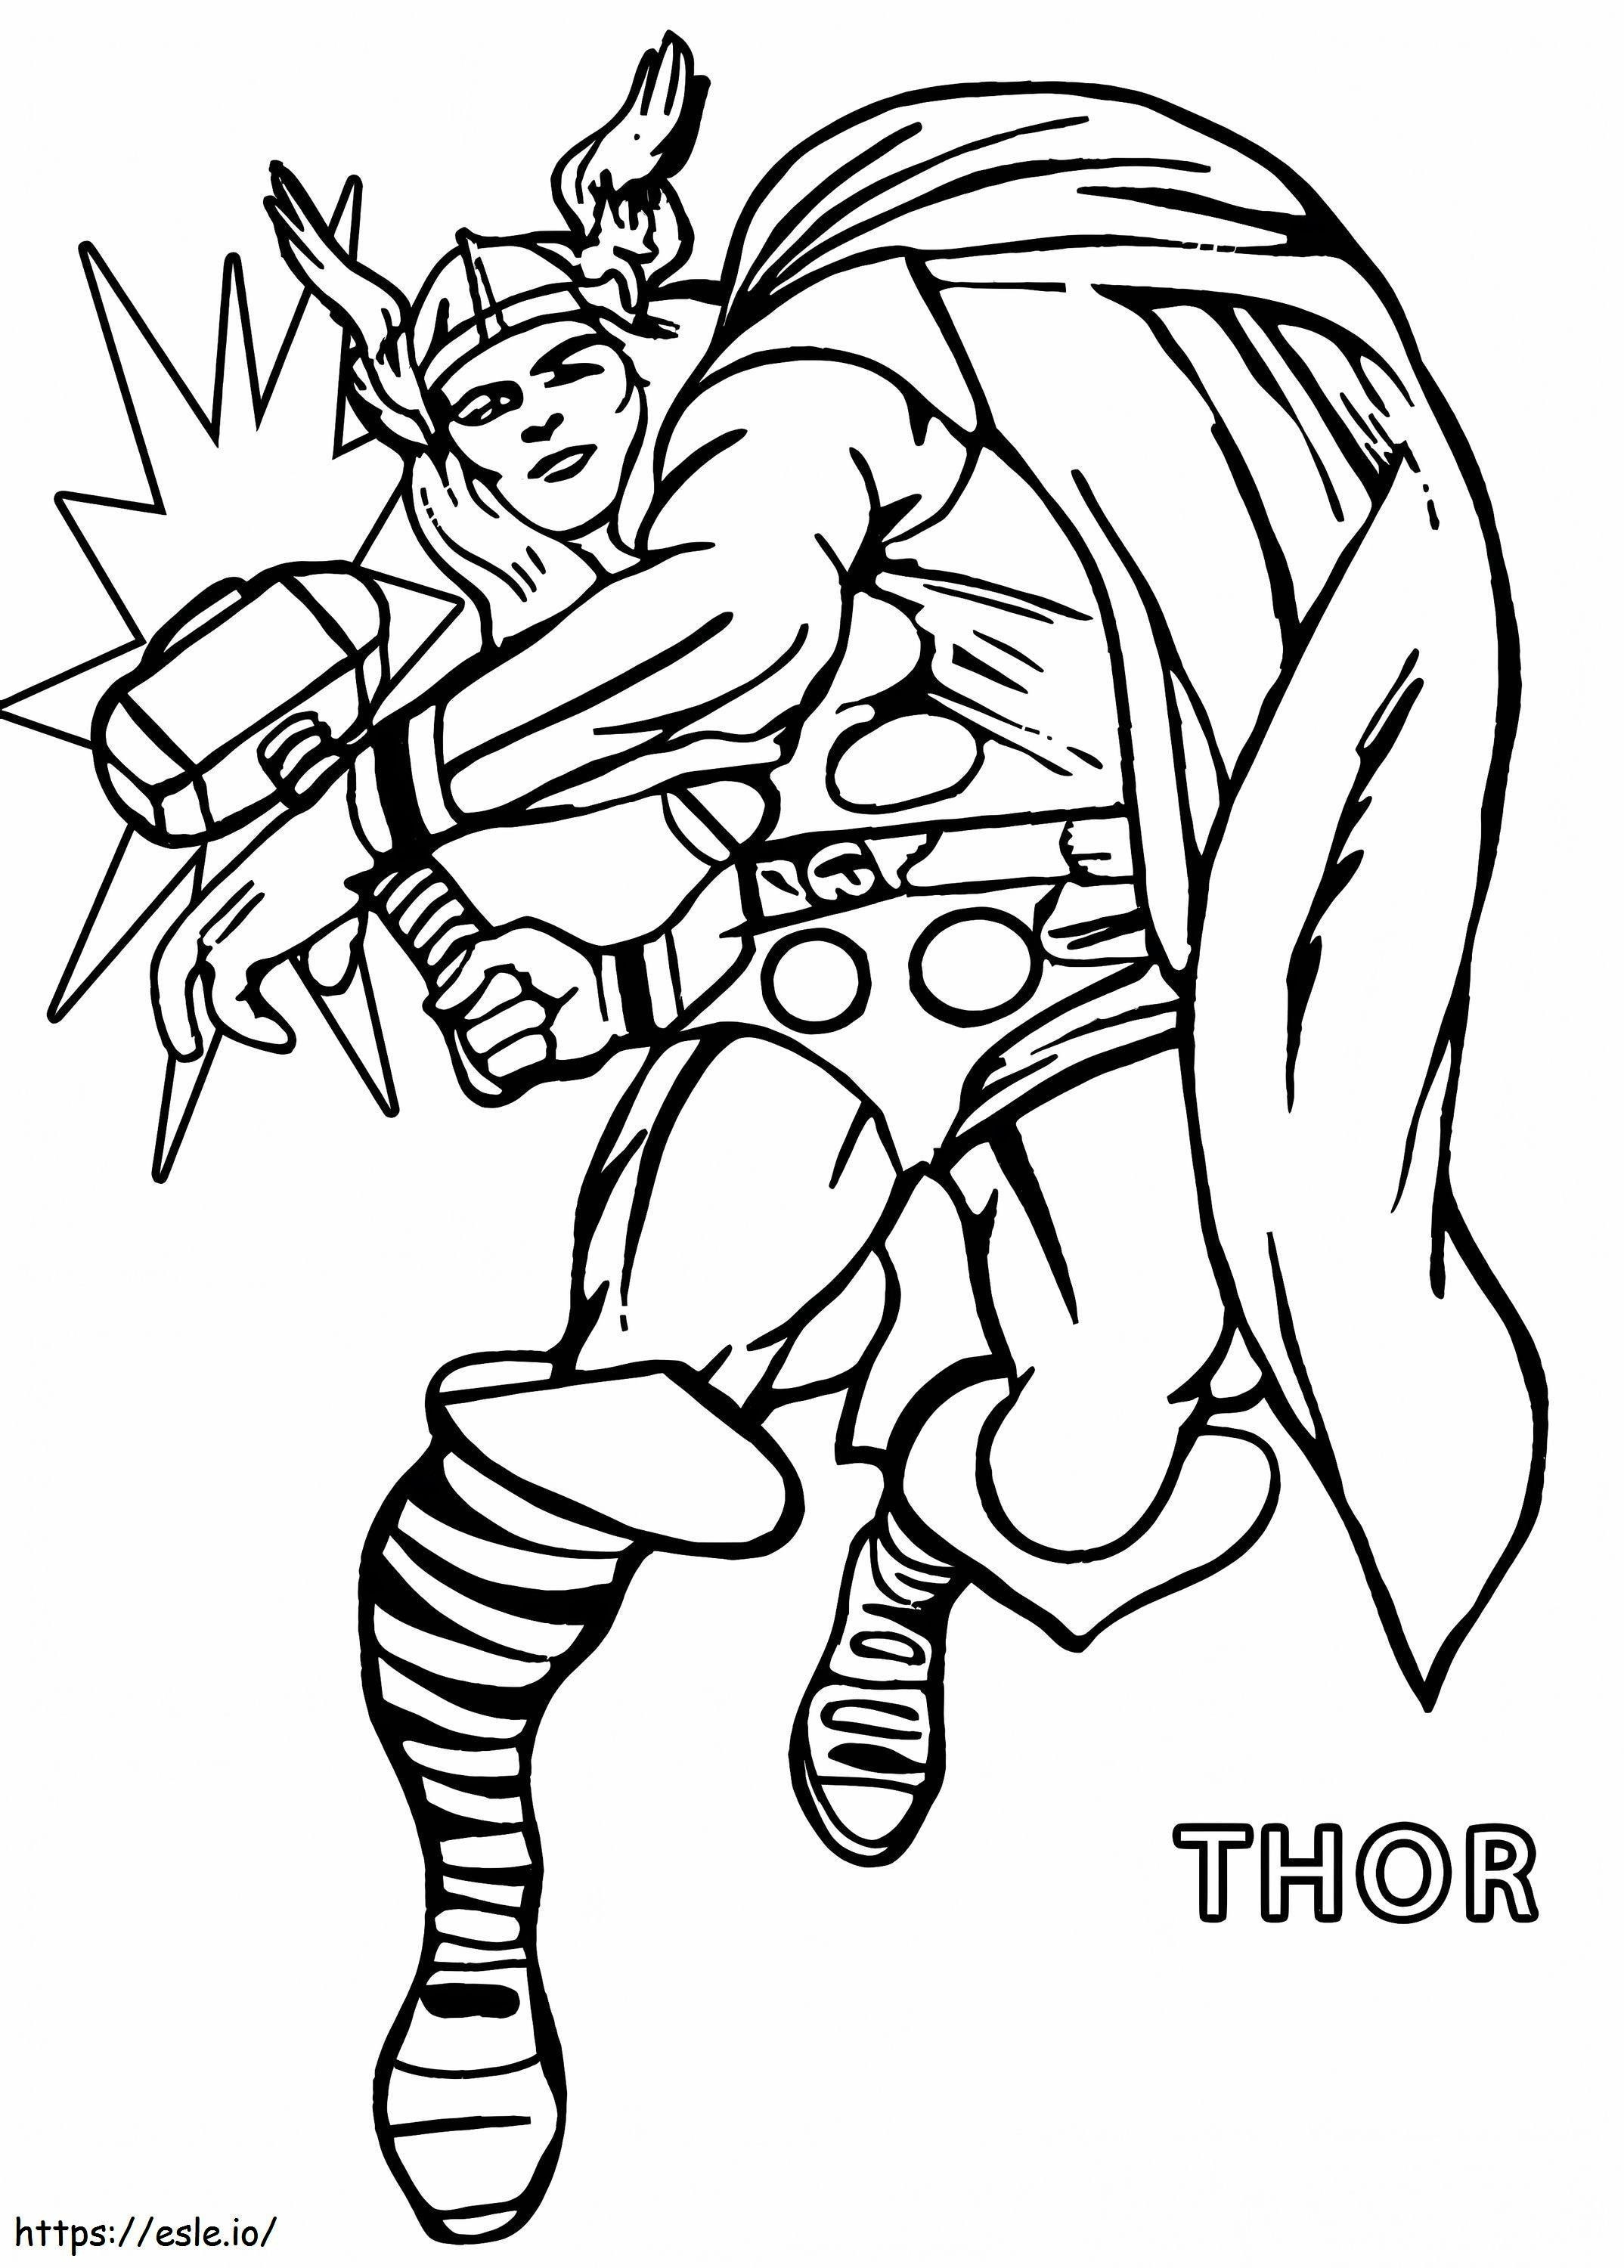 Thor'a Saldırı boyama